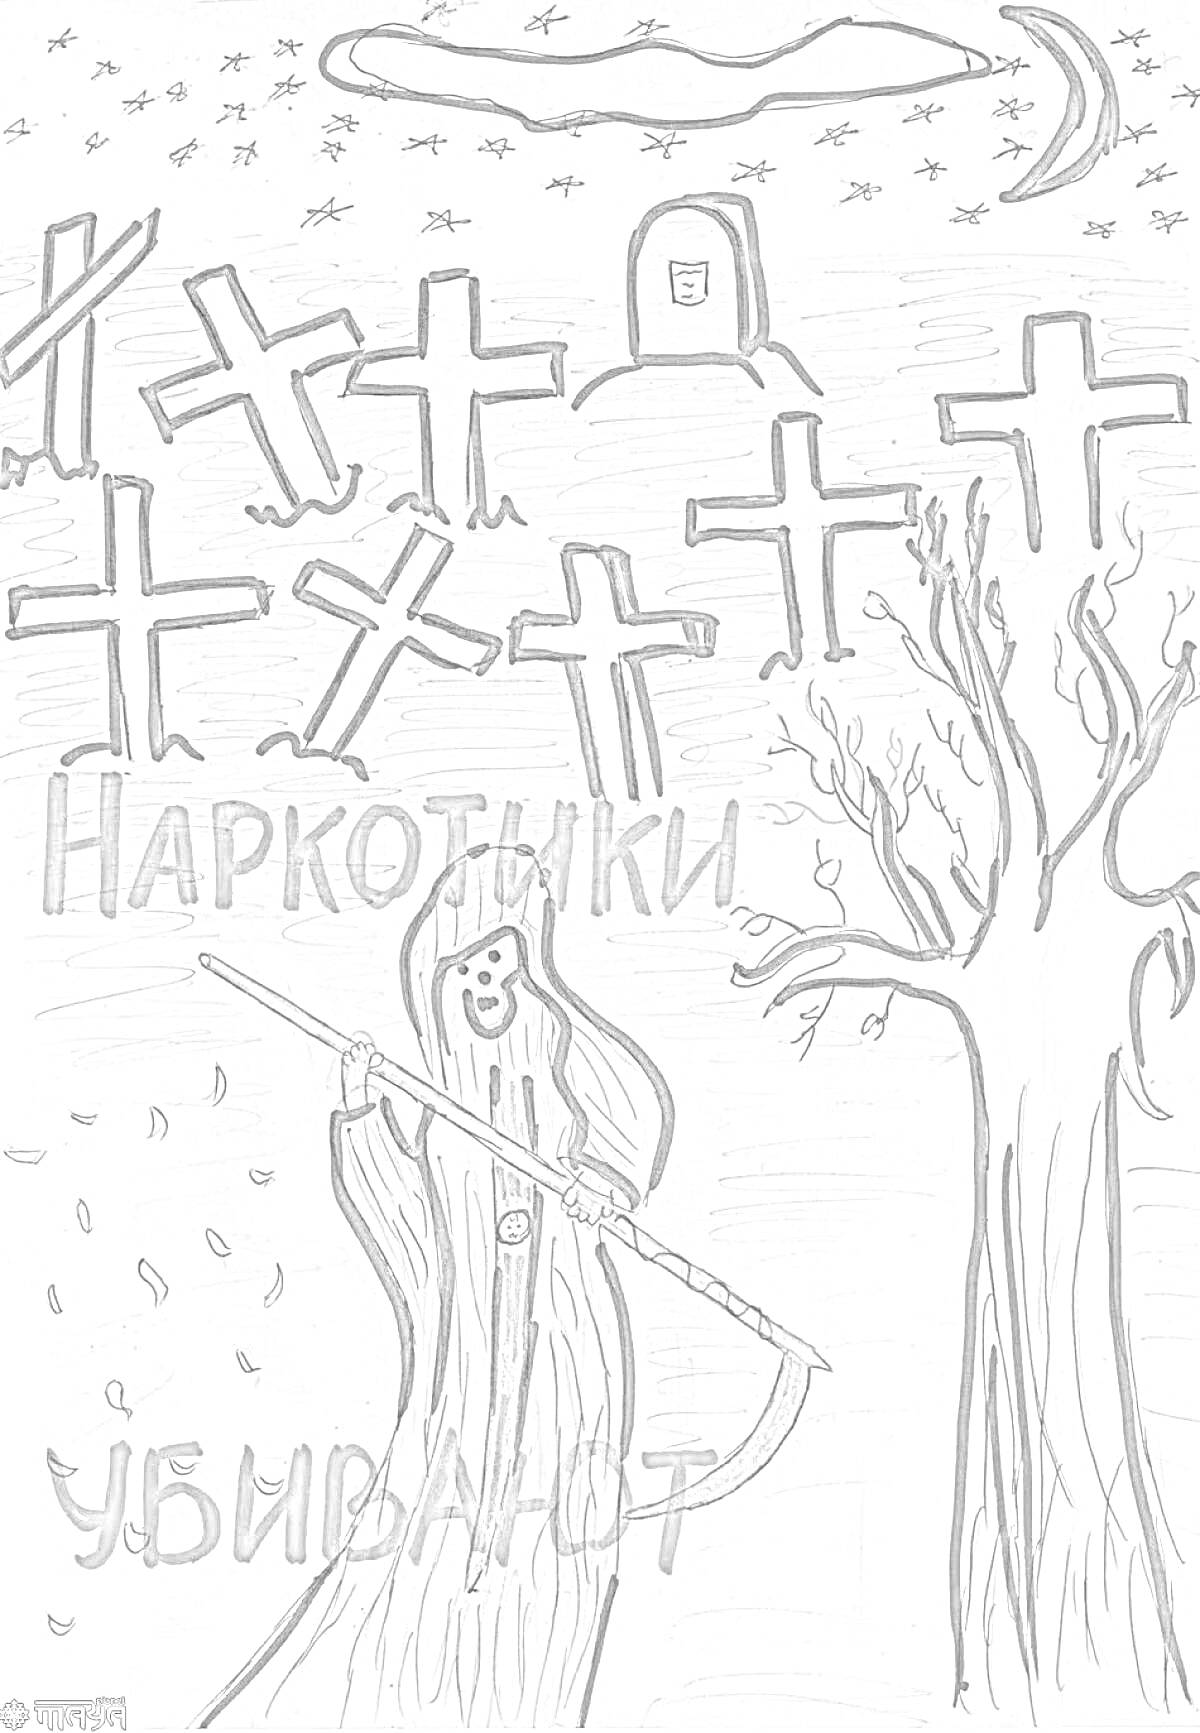 Кладбище с крестами и смертью, подписано 